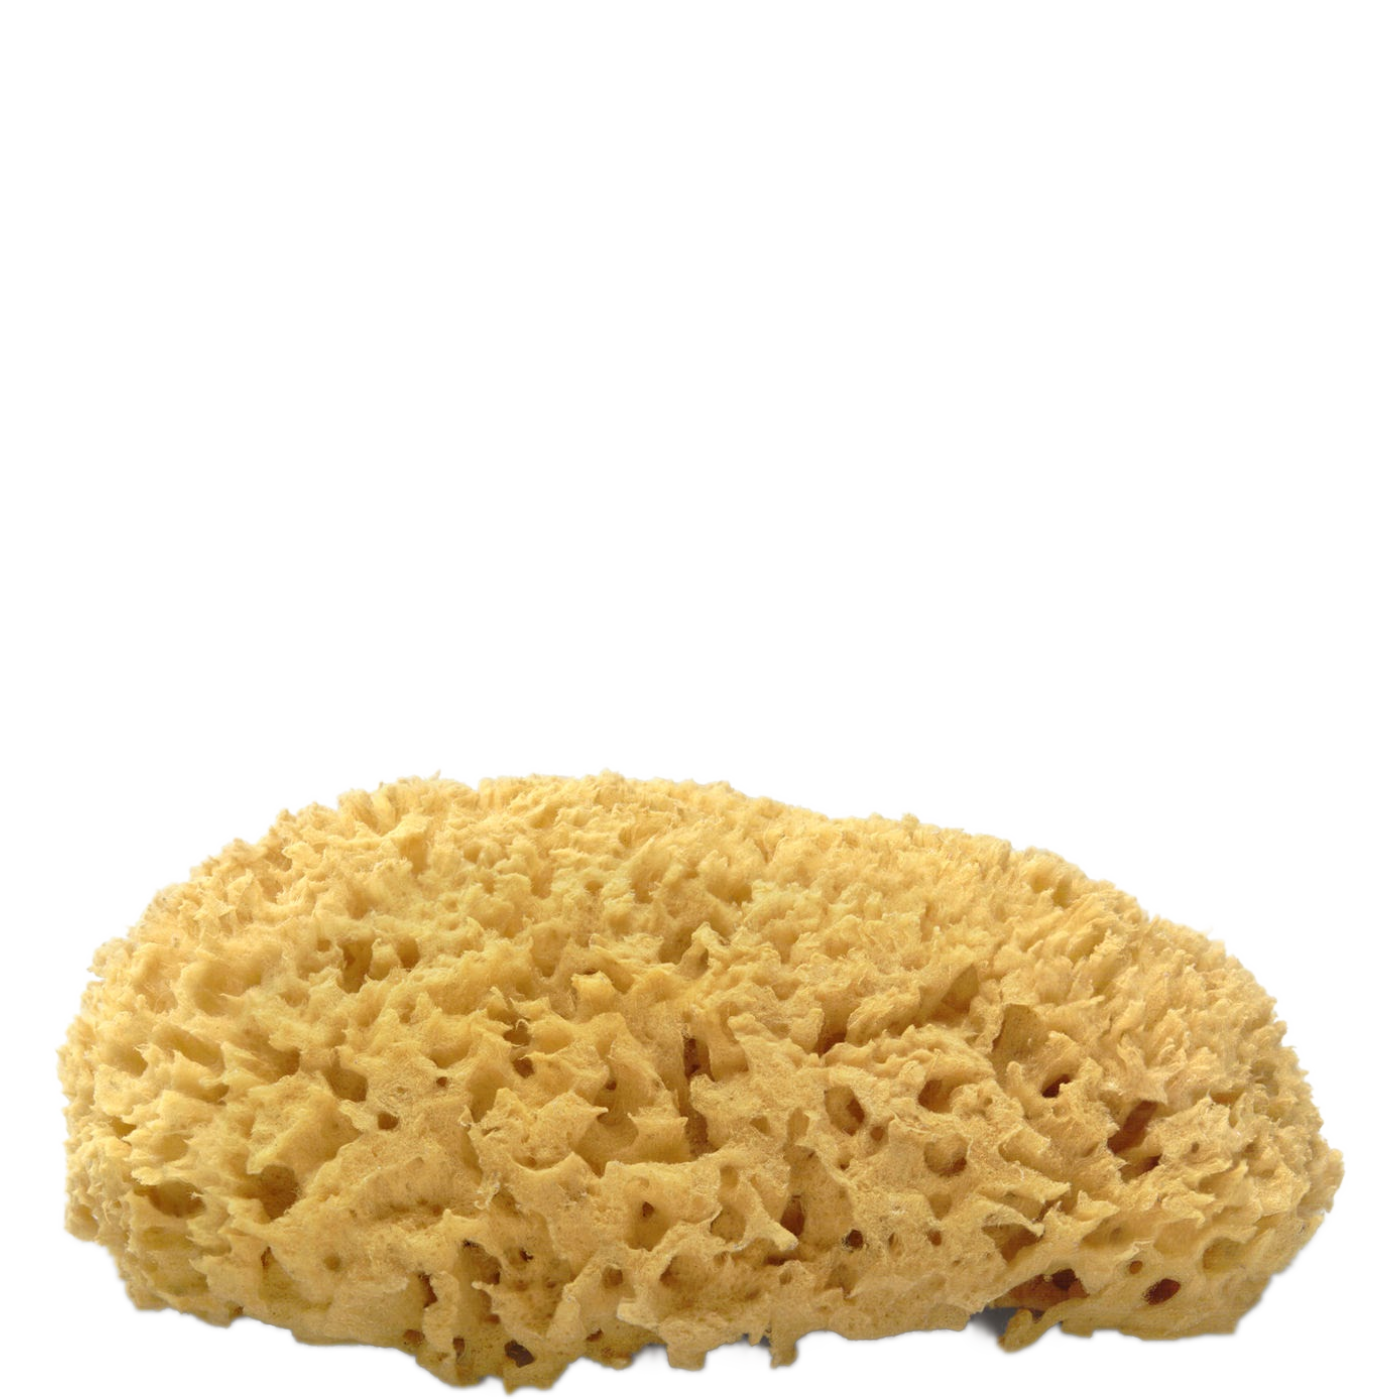 Sea Sponges Facts